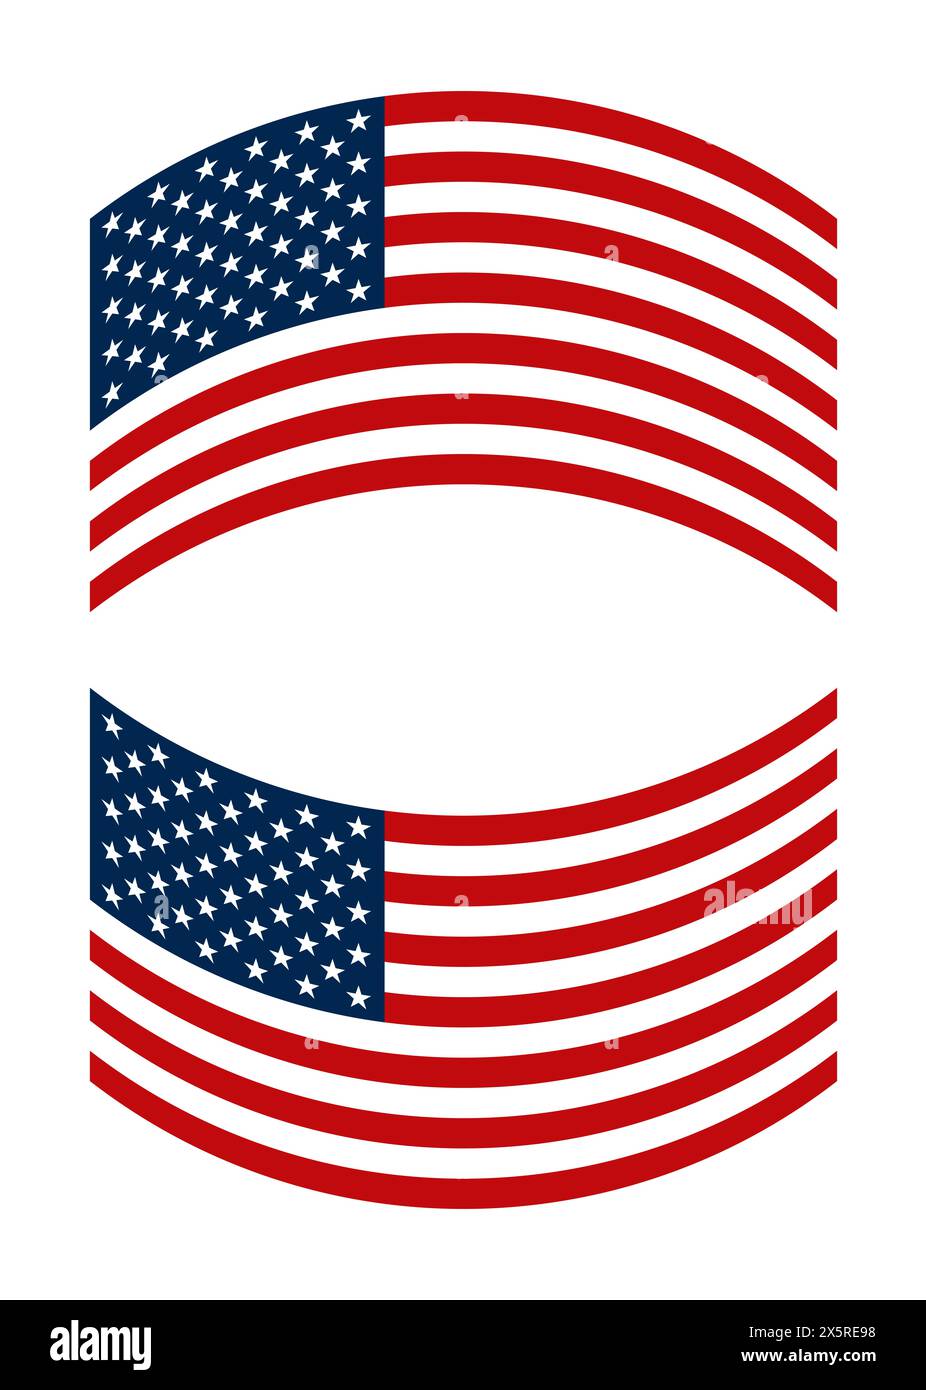 Flagge der Vereinigten Staaten, gekrümmt auf und ab. Die amerikanische Flagge, auch bekannt als die Sterne und Streifen, Rot, weiß und Blau, Old Glory, usw. Stockfoto